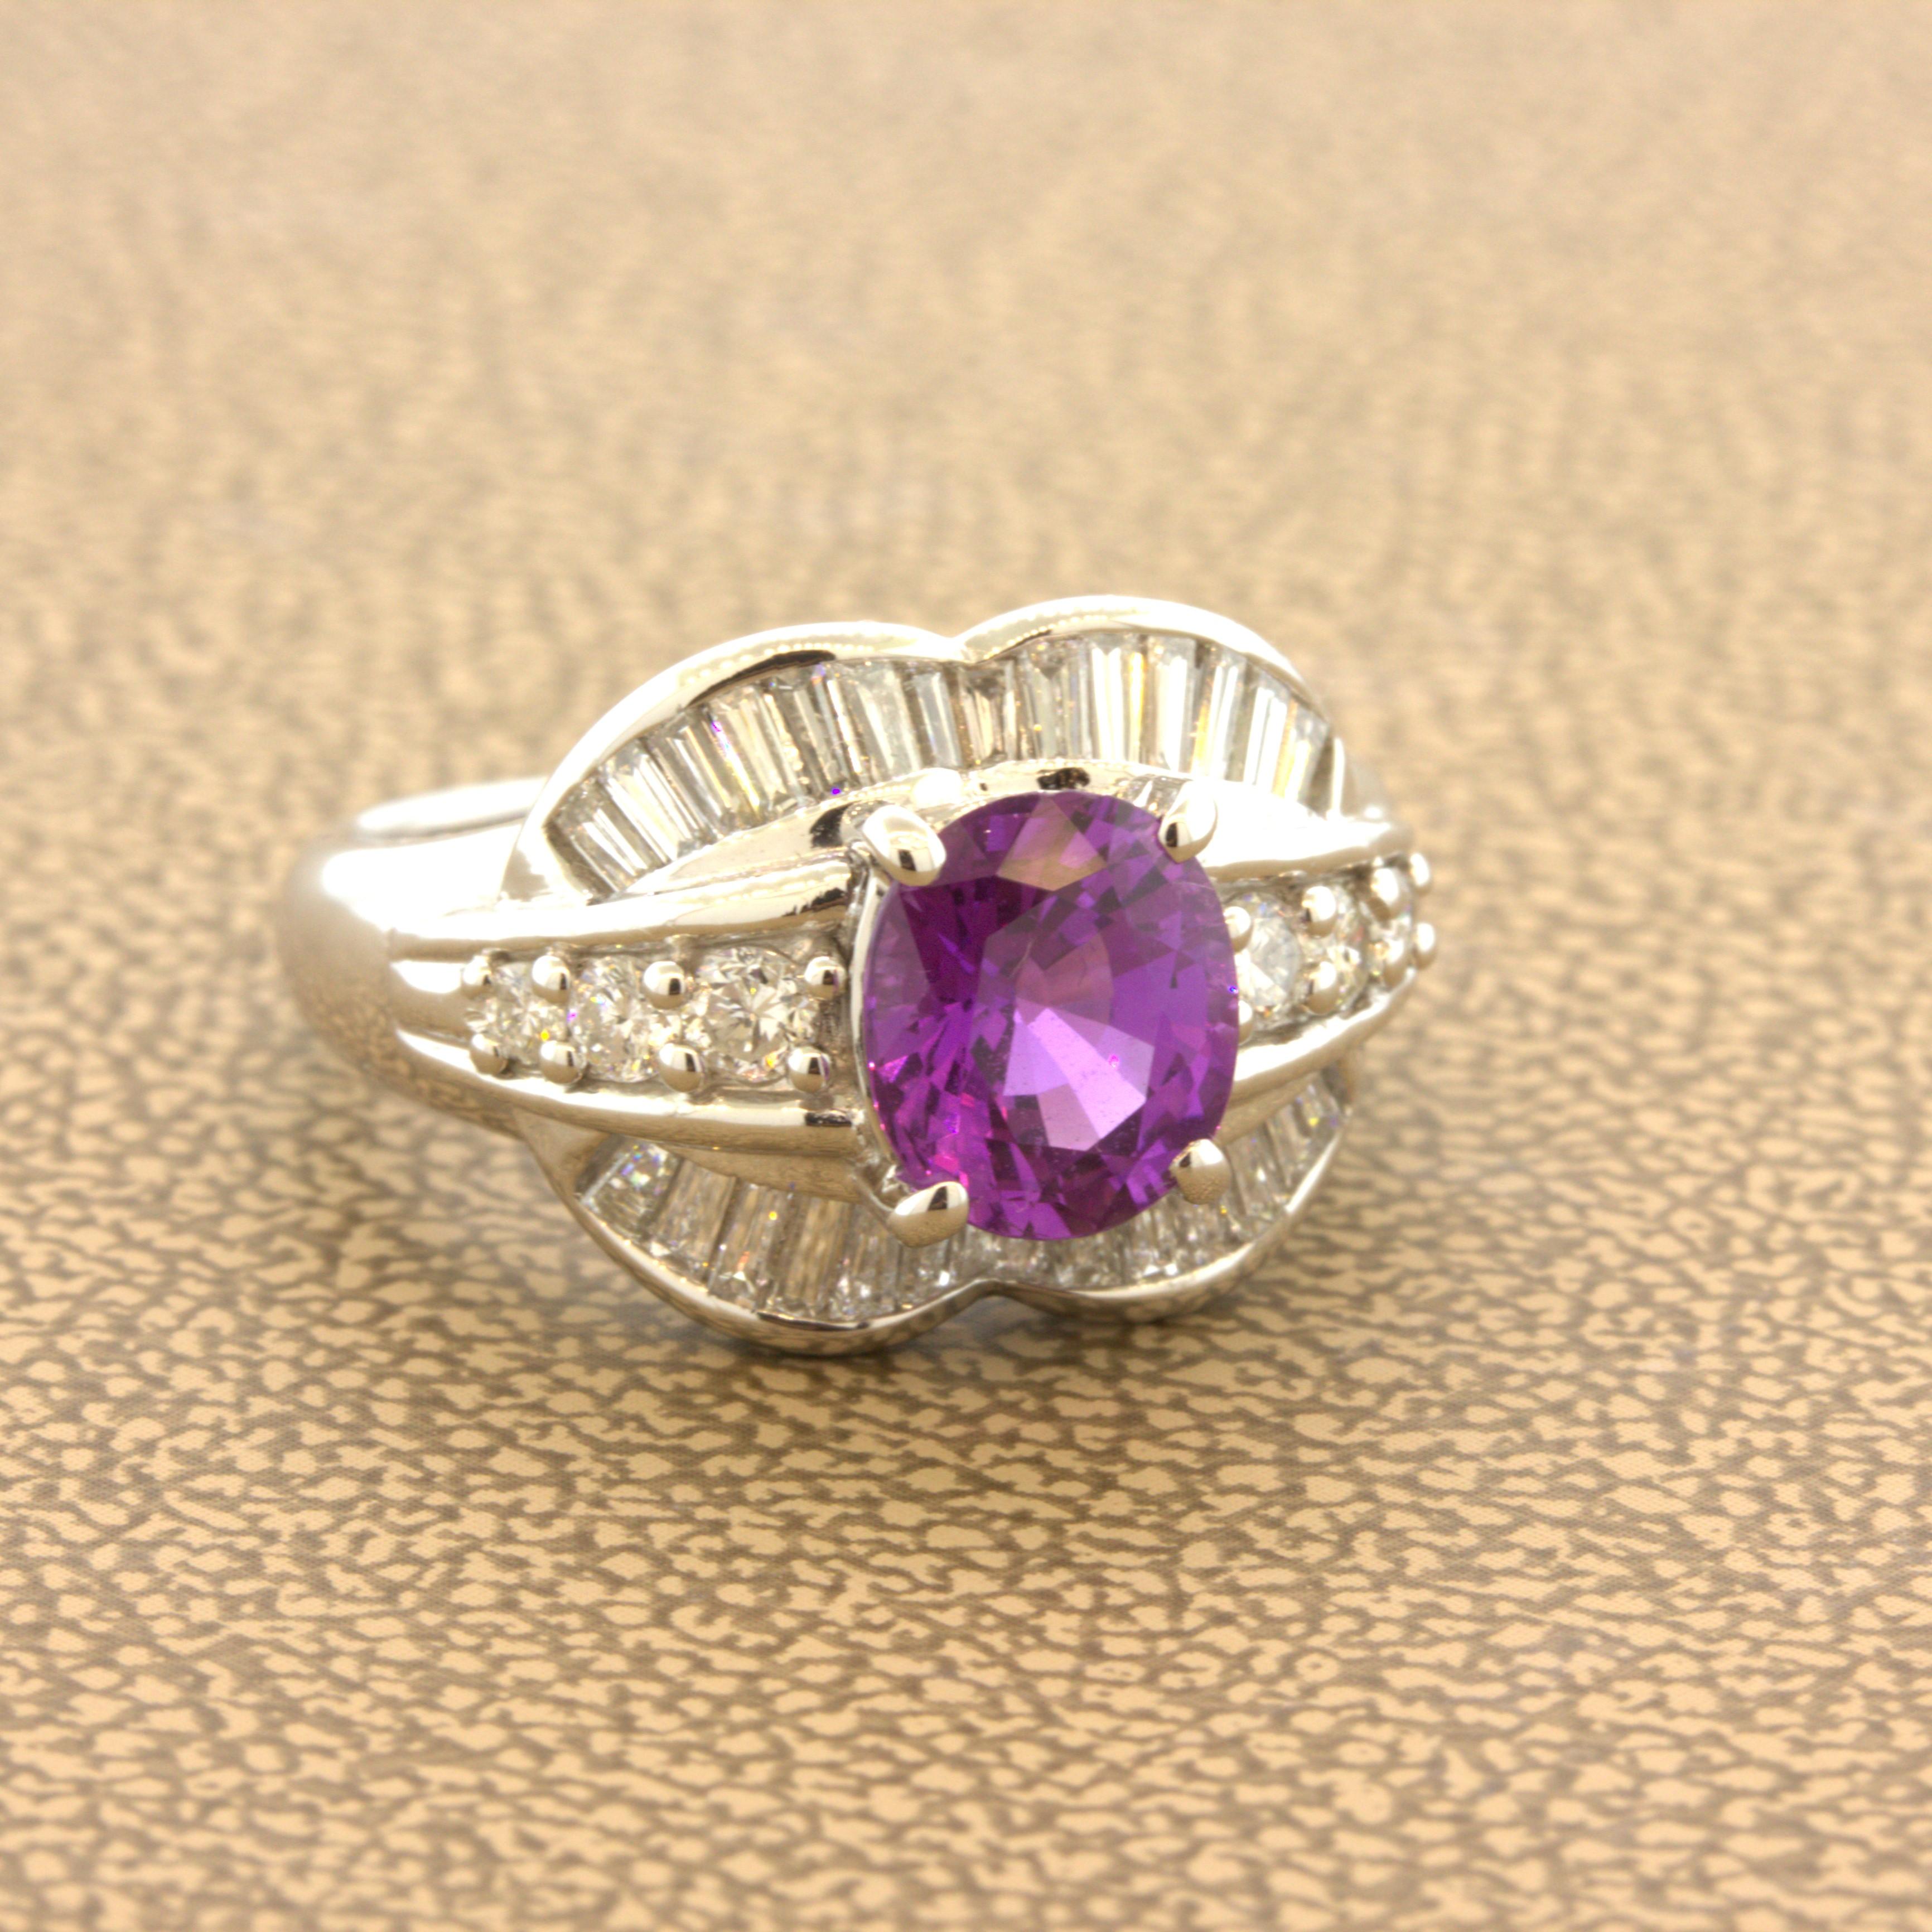 Ein reicher, intensiv gefärbter violetter Saphir steht im Mittelpunkt des Geschehens. Er wiegt 1,83 Karat und hat eine leuchtend violette Farbe. Er hat eine schöne ovale Form, die im Licht schillert und eine hervorragende Lichtrückgabe aufweist.